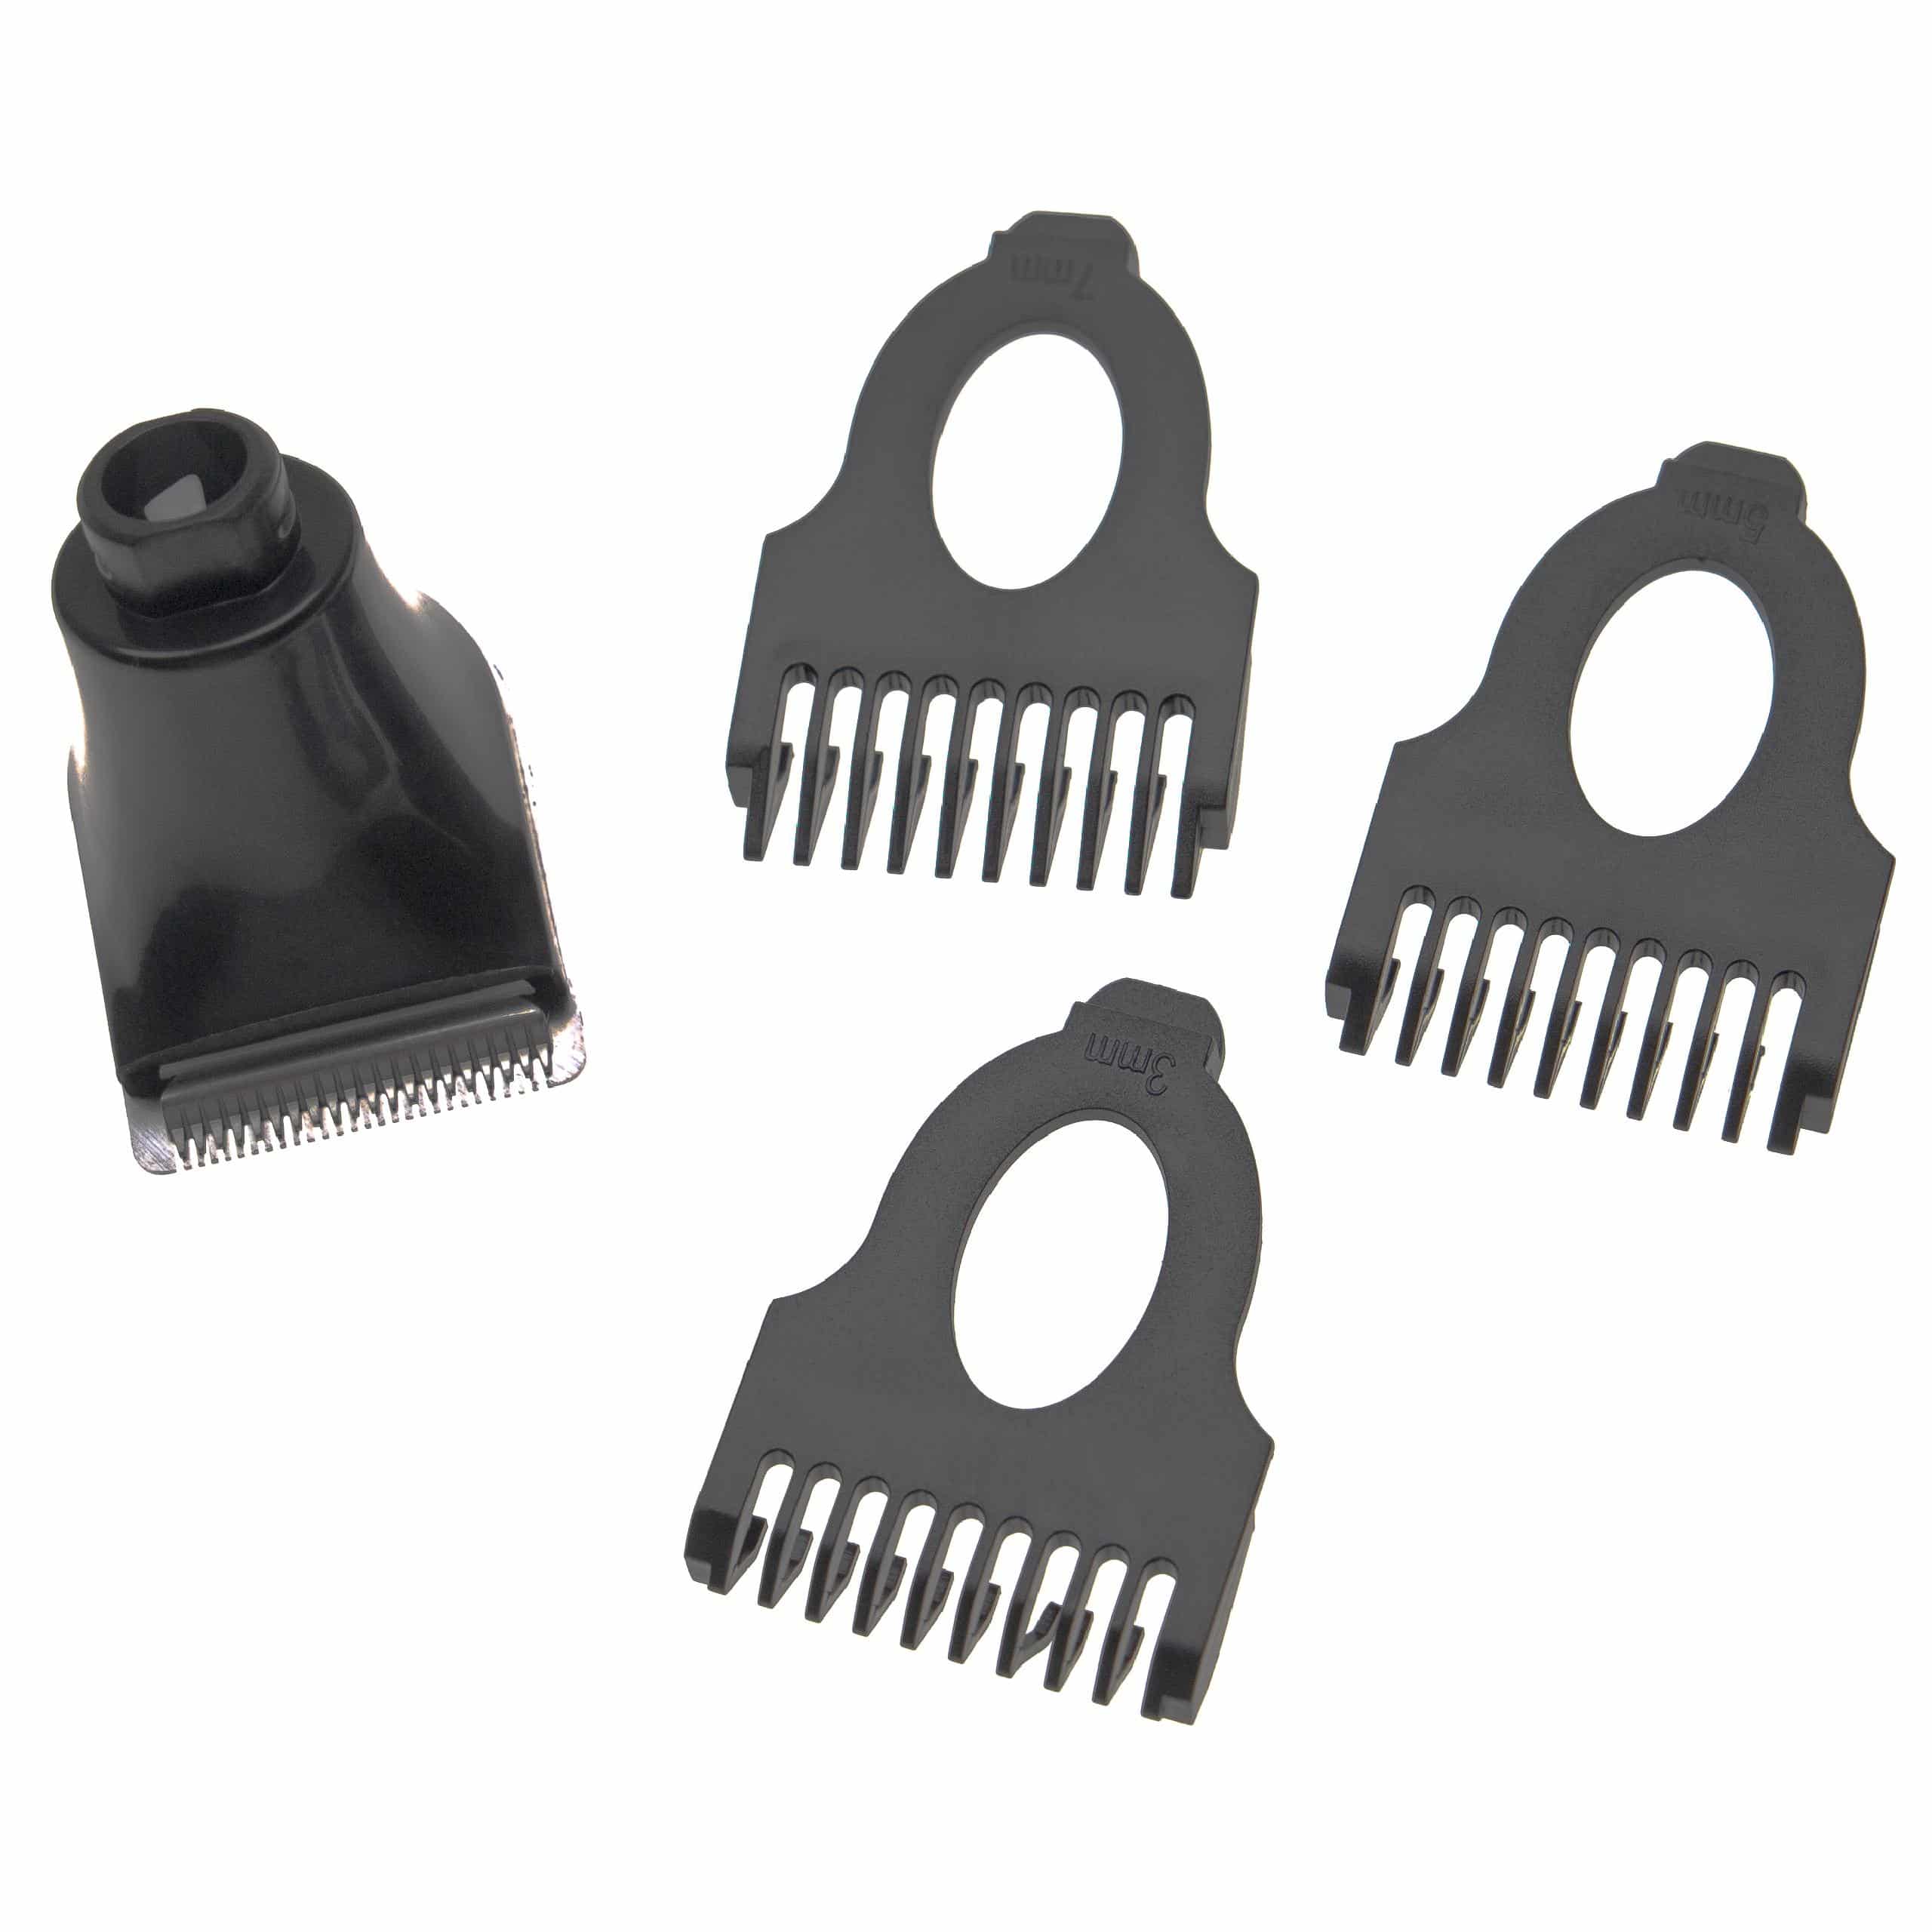 Accessorio per trimmer (set) per Philips Arcitec rasoio ecc. - 4 pzz. + pettine da 3mm / 5mm / 7mm